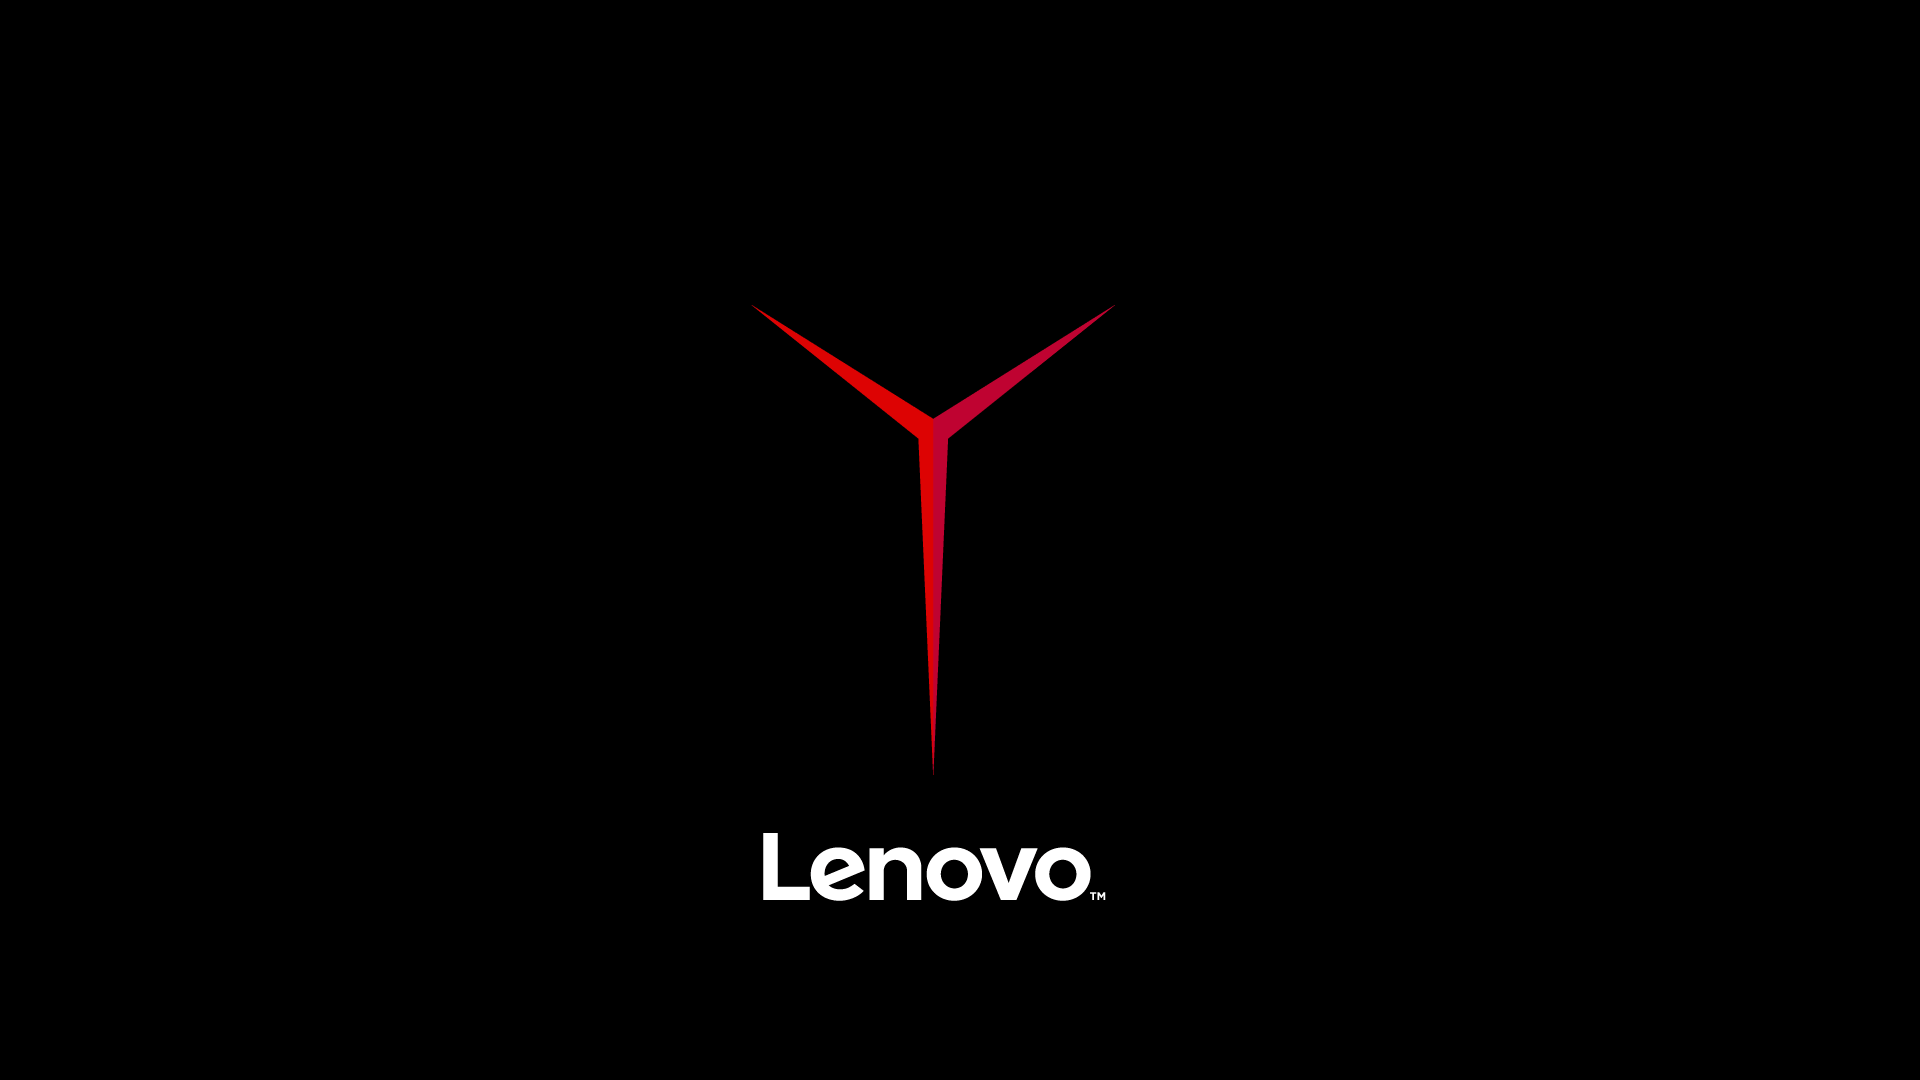 Lenovo Wallpapers 4k Hd Lenovo Backgrounds On Wallpaperbat